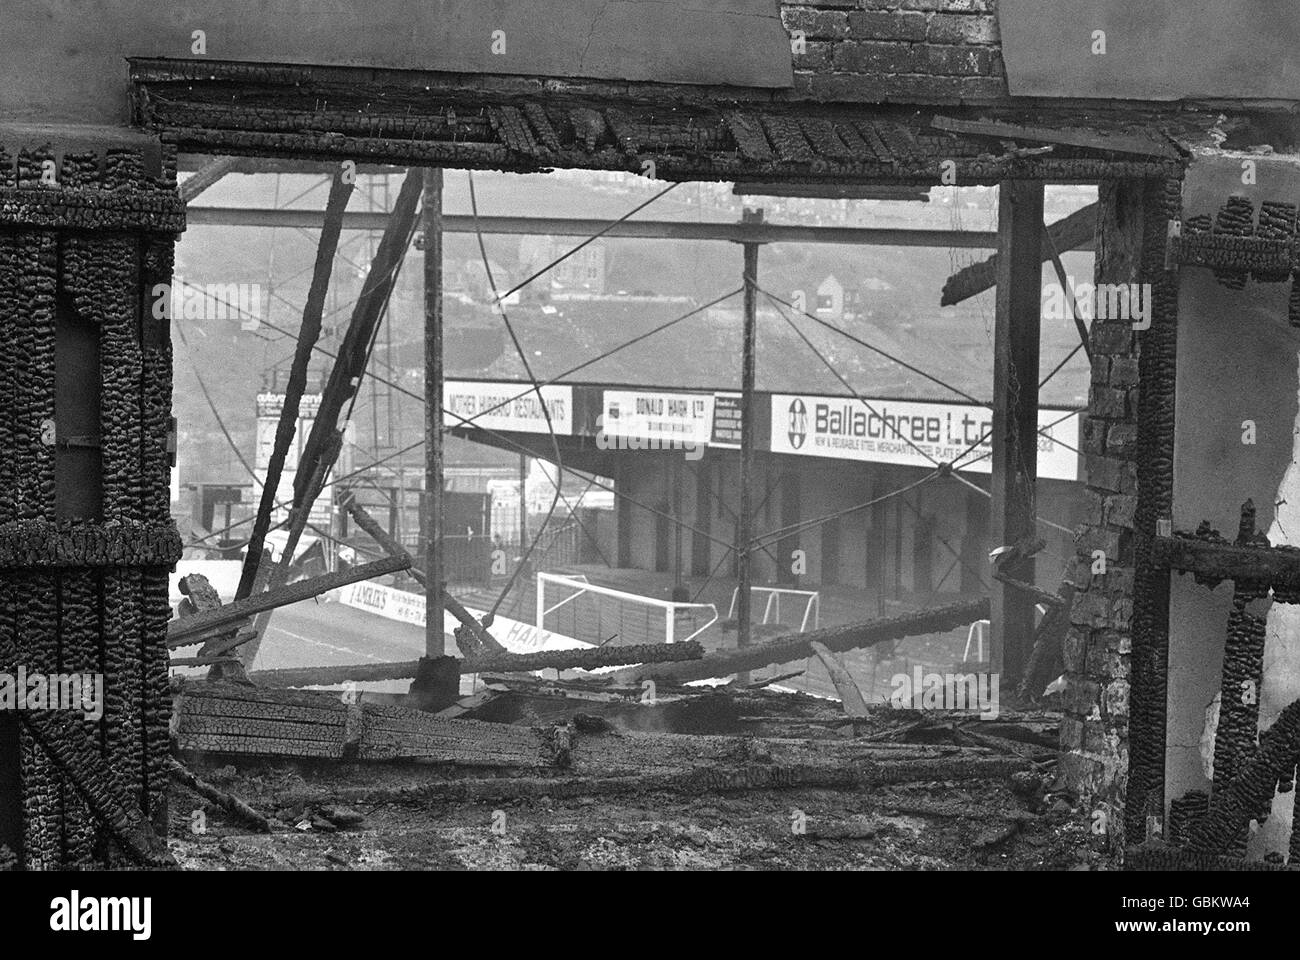 Les restes charrés du stand principal à Valley Parade, domicile de Bradford City, après un incendie balayé à travers elle pendant le dernier match de la saison, laissant 56 personnes mortes et beaucoup d'autres blessés Banque D'Images